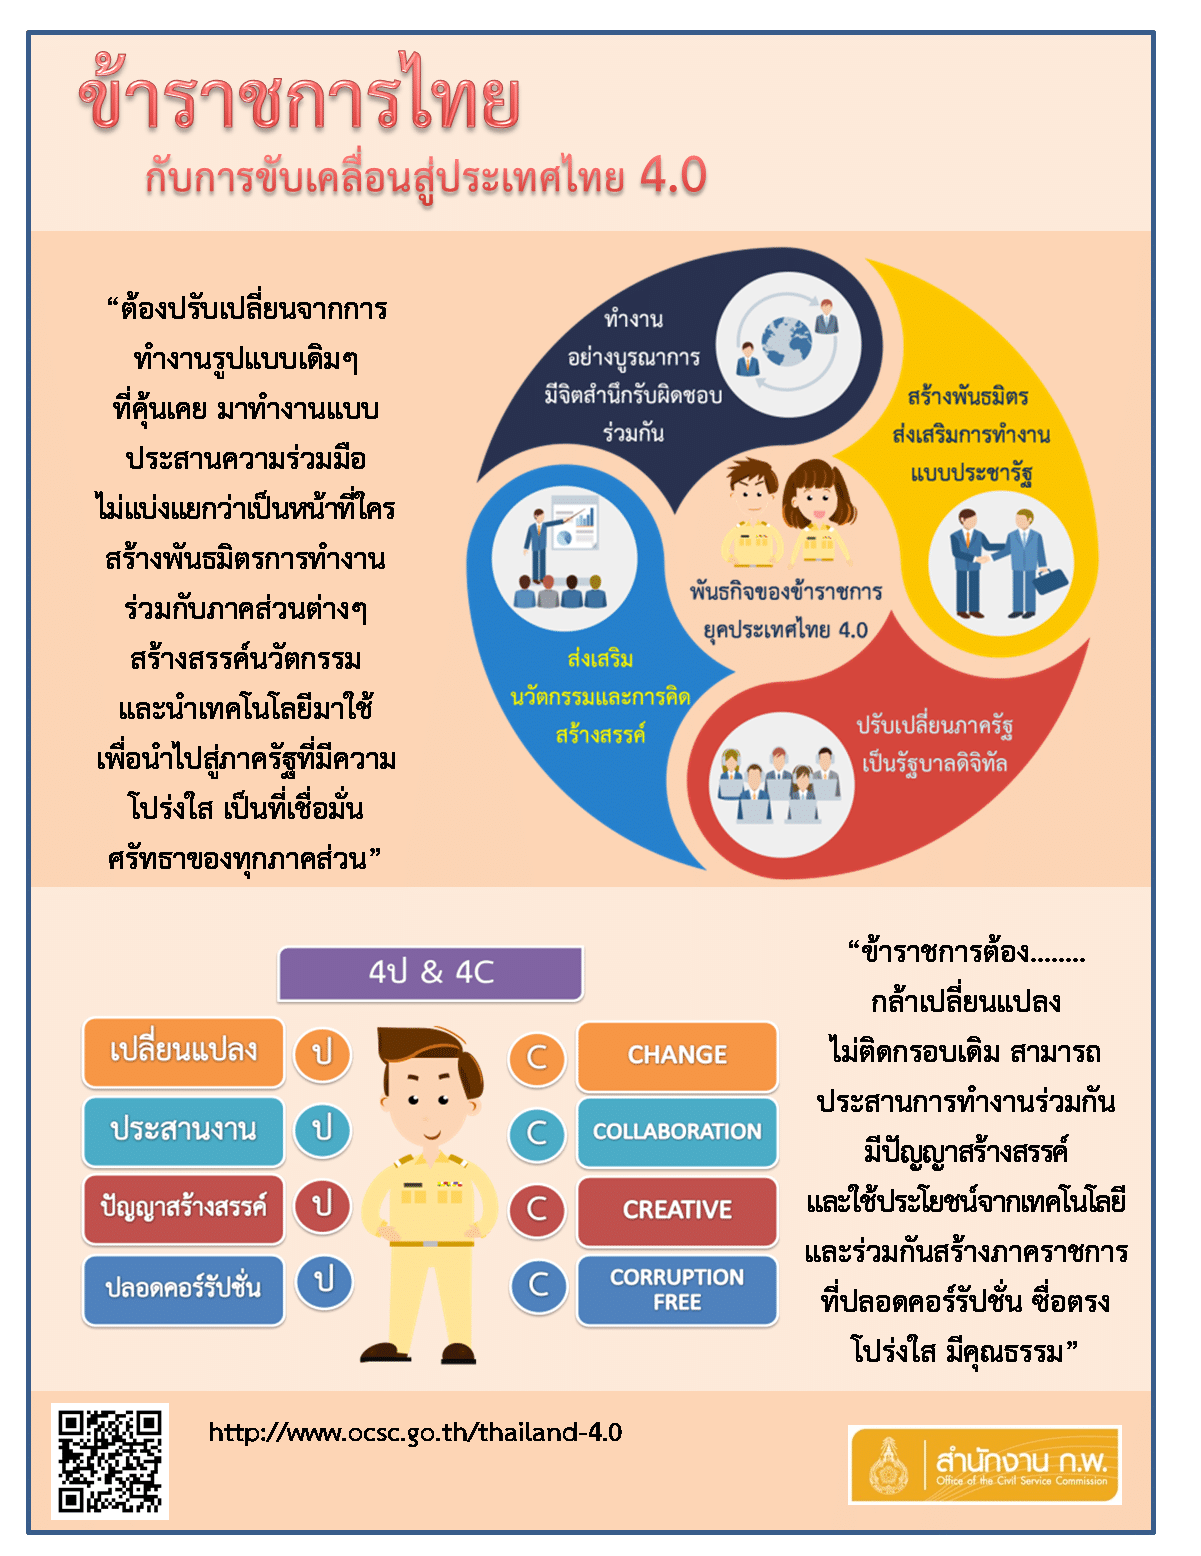 ข้าราชการไทยกับการขับคลื่อน สู่ประเทศไทย 4.0